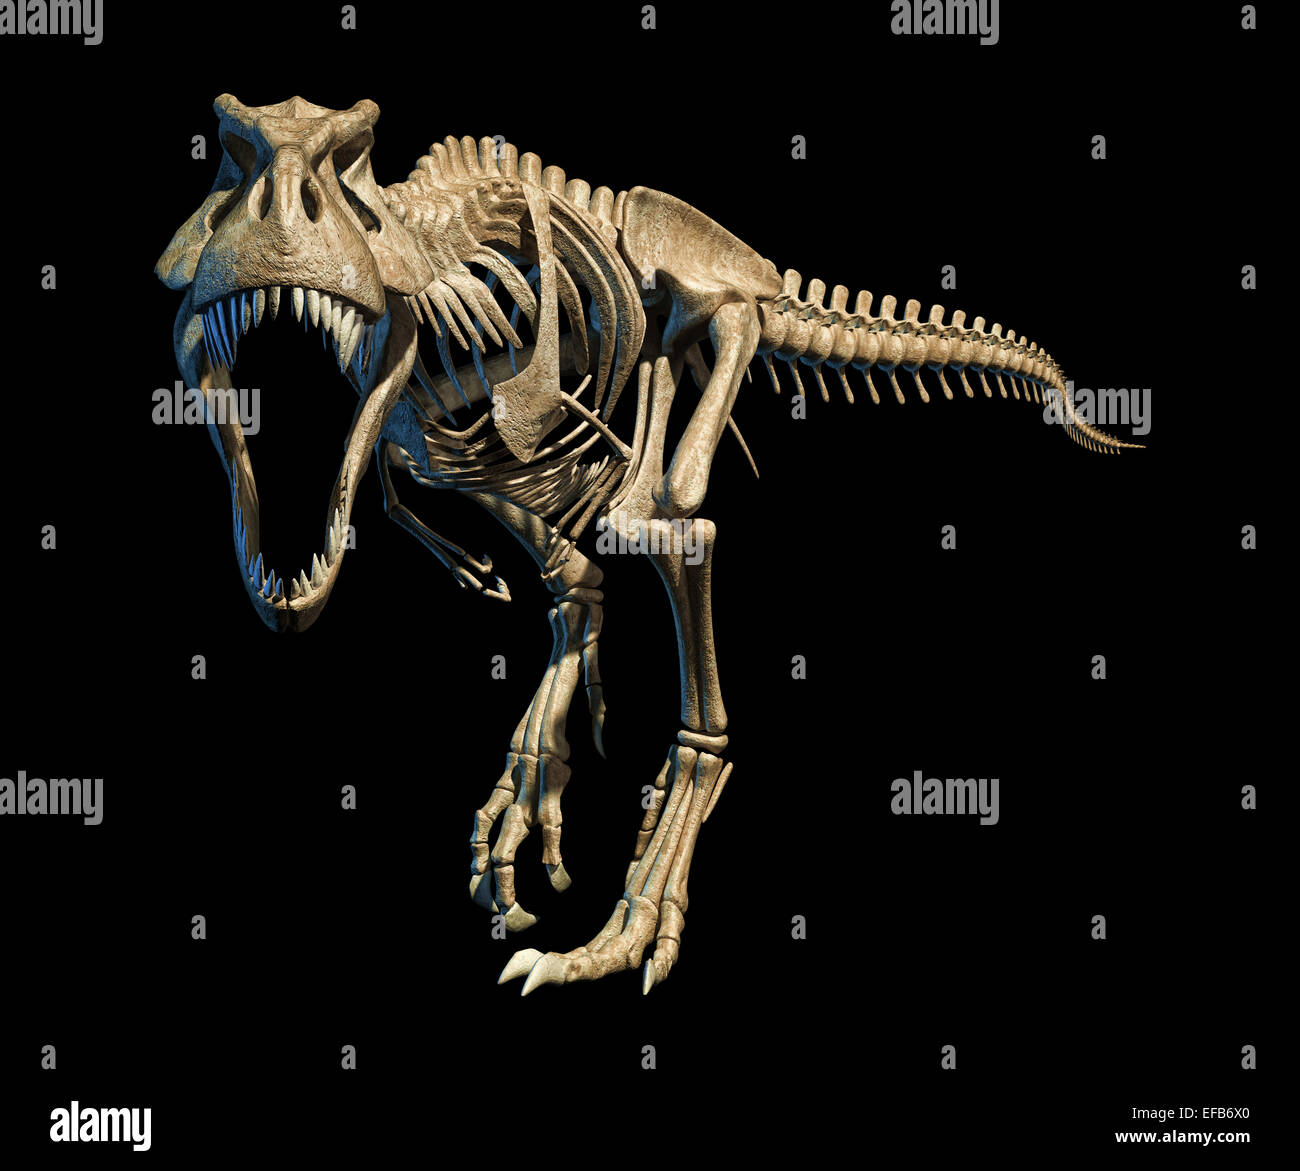 T-Rex photo-réaliste et scientifiquement correcte, squelette complet dynamique à poser , sur fond noir. Vue de face. Avec clipping Banque D'Images